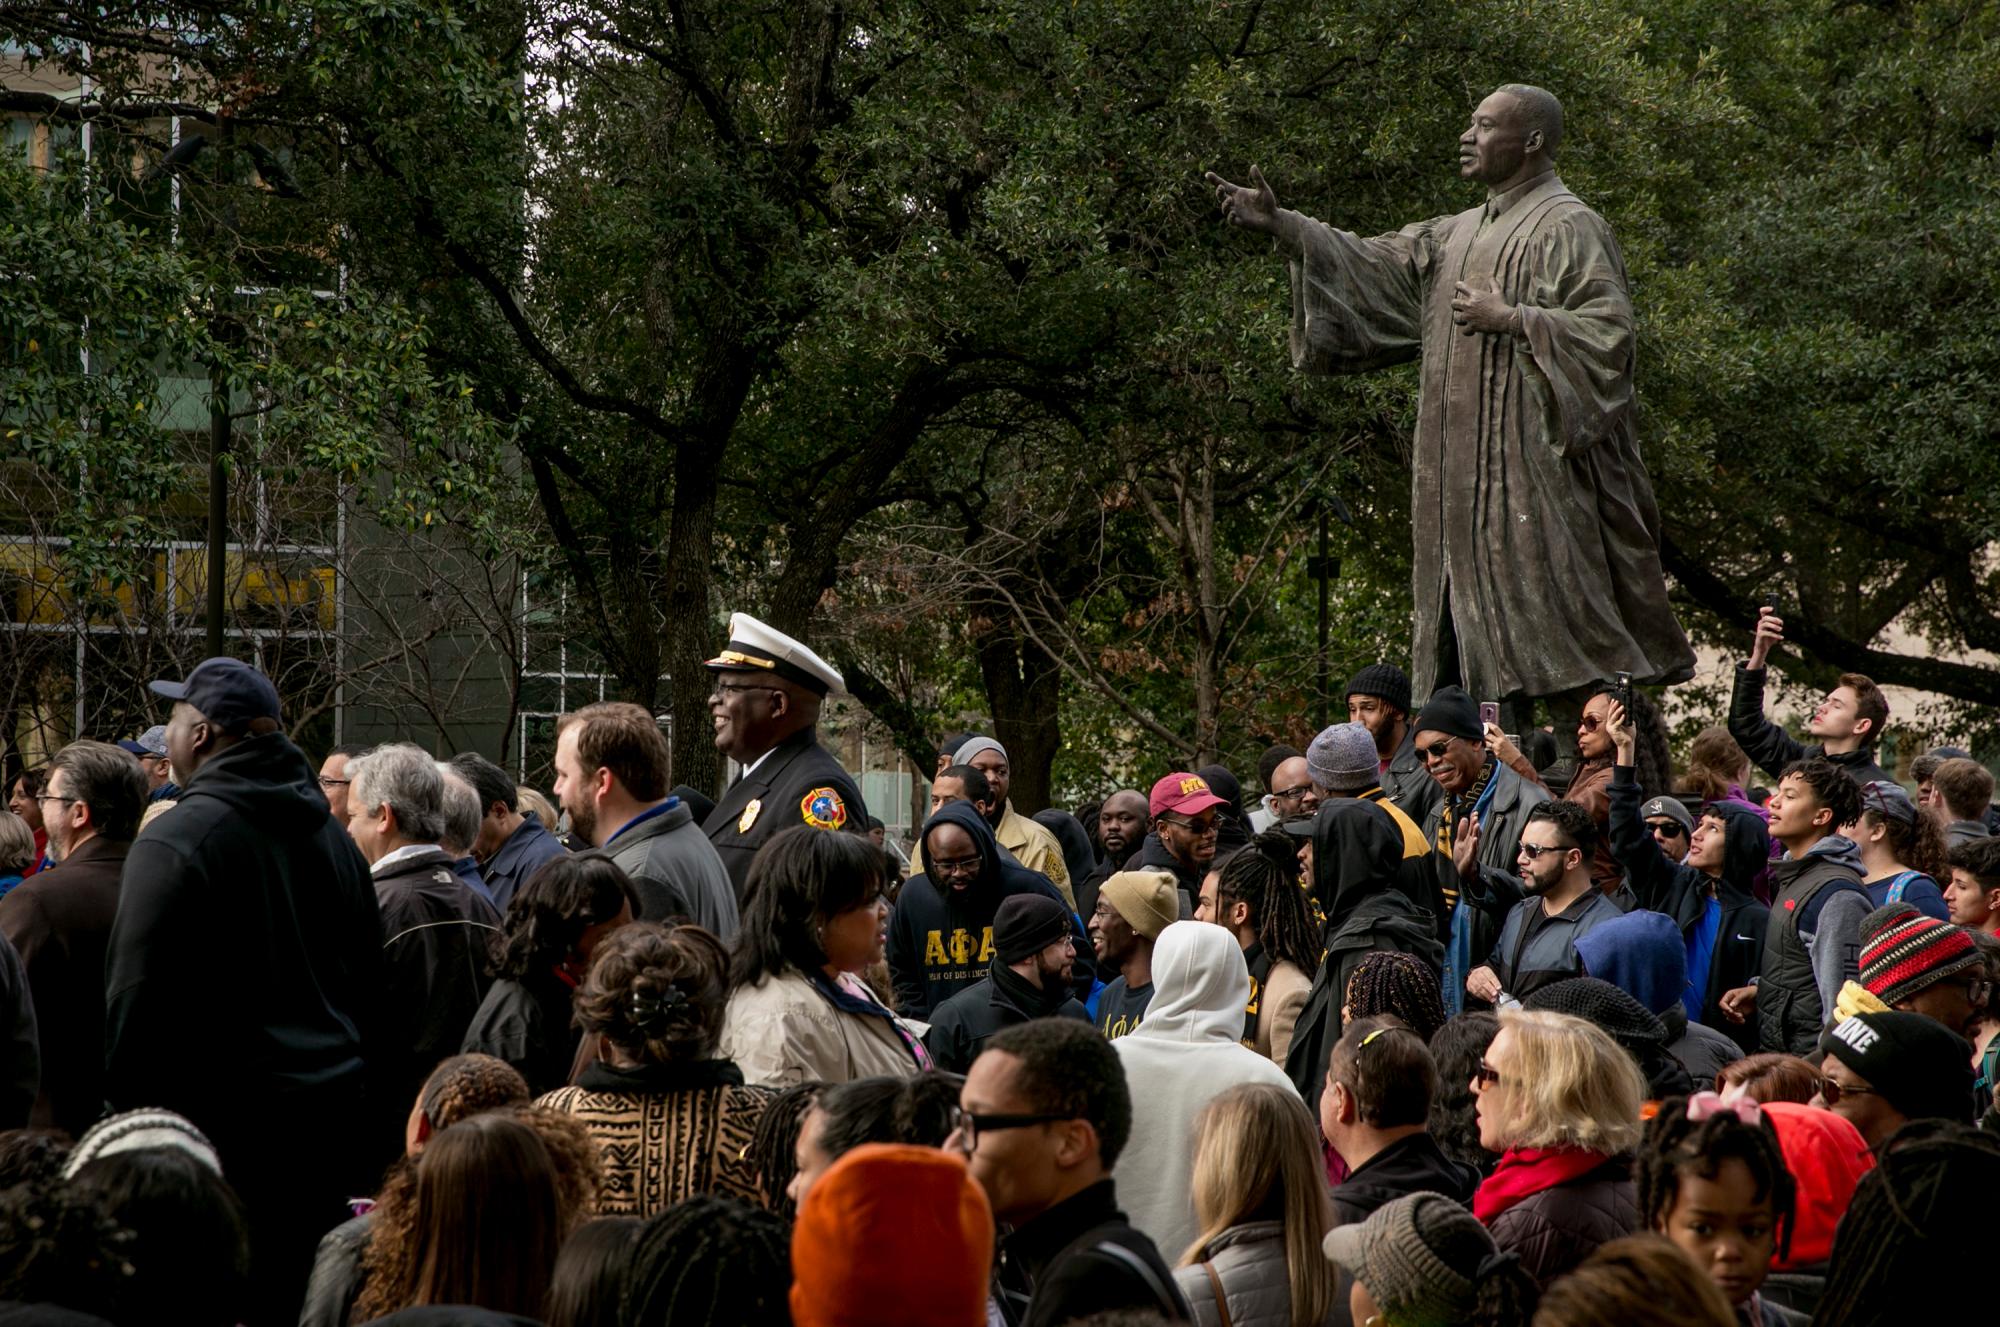 La gente escucha los discursos durante la marcha y el festival de MLK el lunes 21 de enero de 2019 en Austin, Texas. Miles conmemoraron el legado del asesinado líder de los derechos civiles, el Reverendo Martin Luther King Jr., en una marcha desde la Universidad de Texas hasta un festival comunitario en la Universidad de Houston-Tillotson.